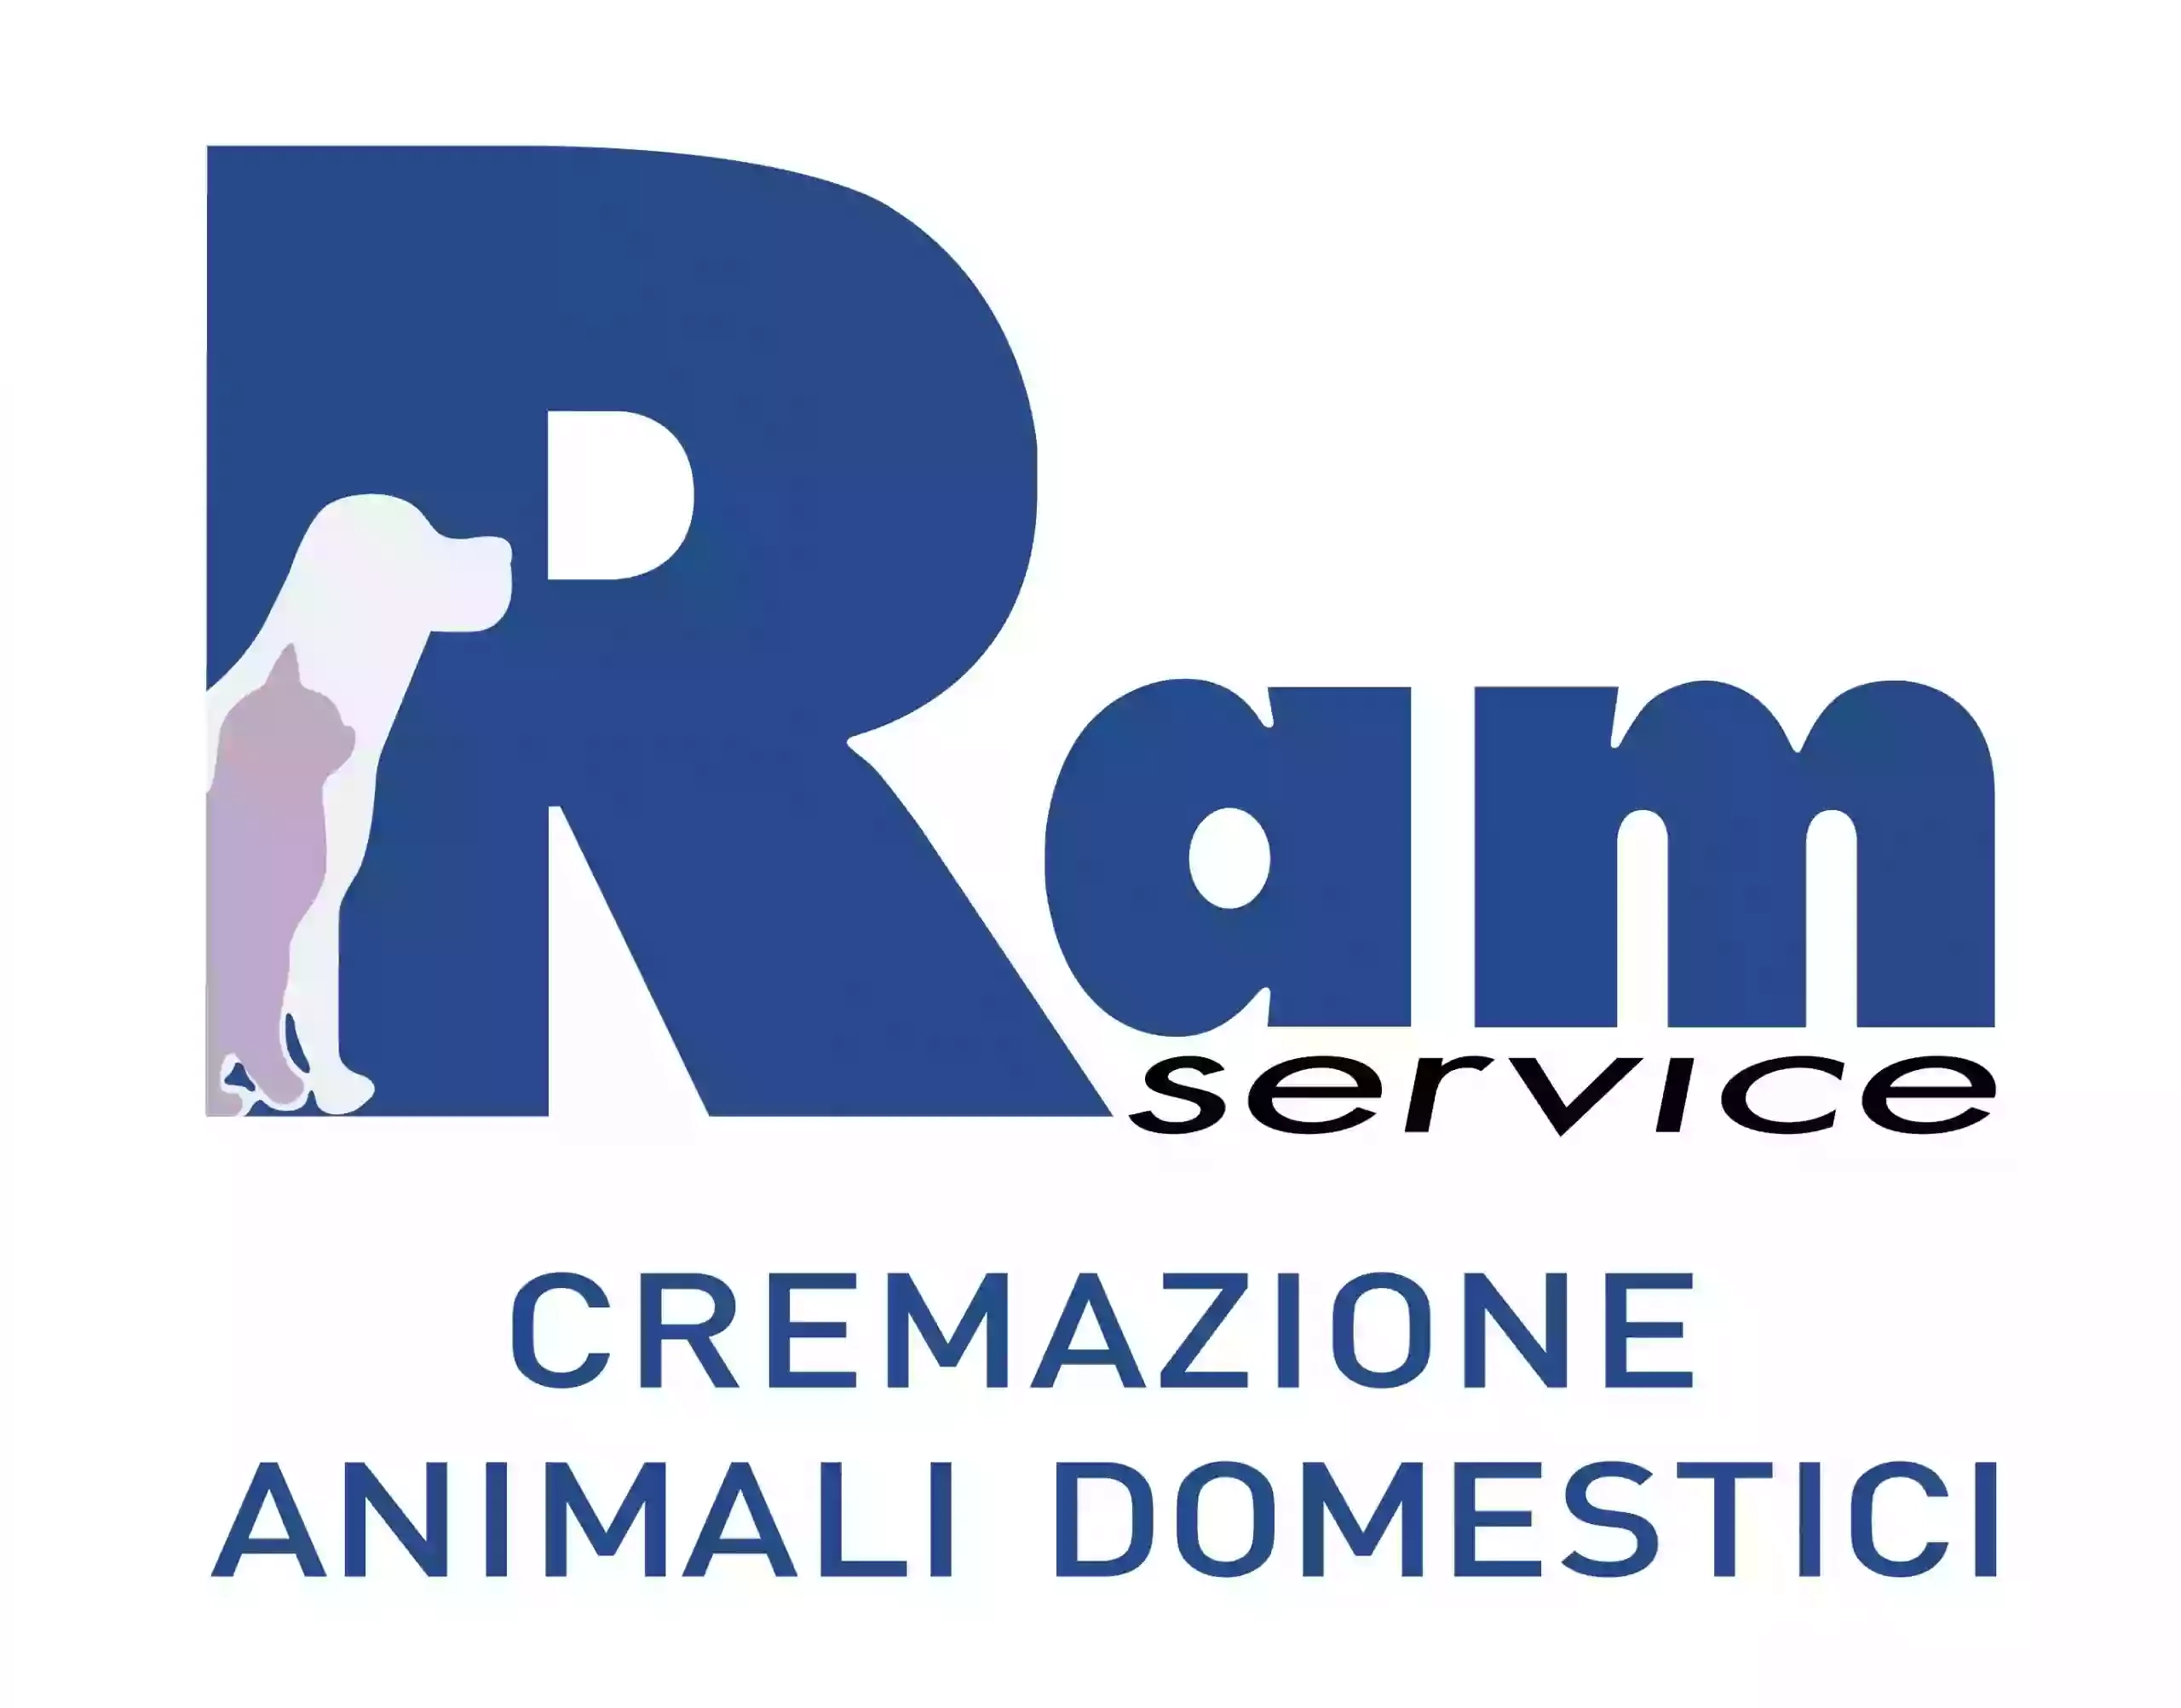 Ram Service Cremazione Animali